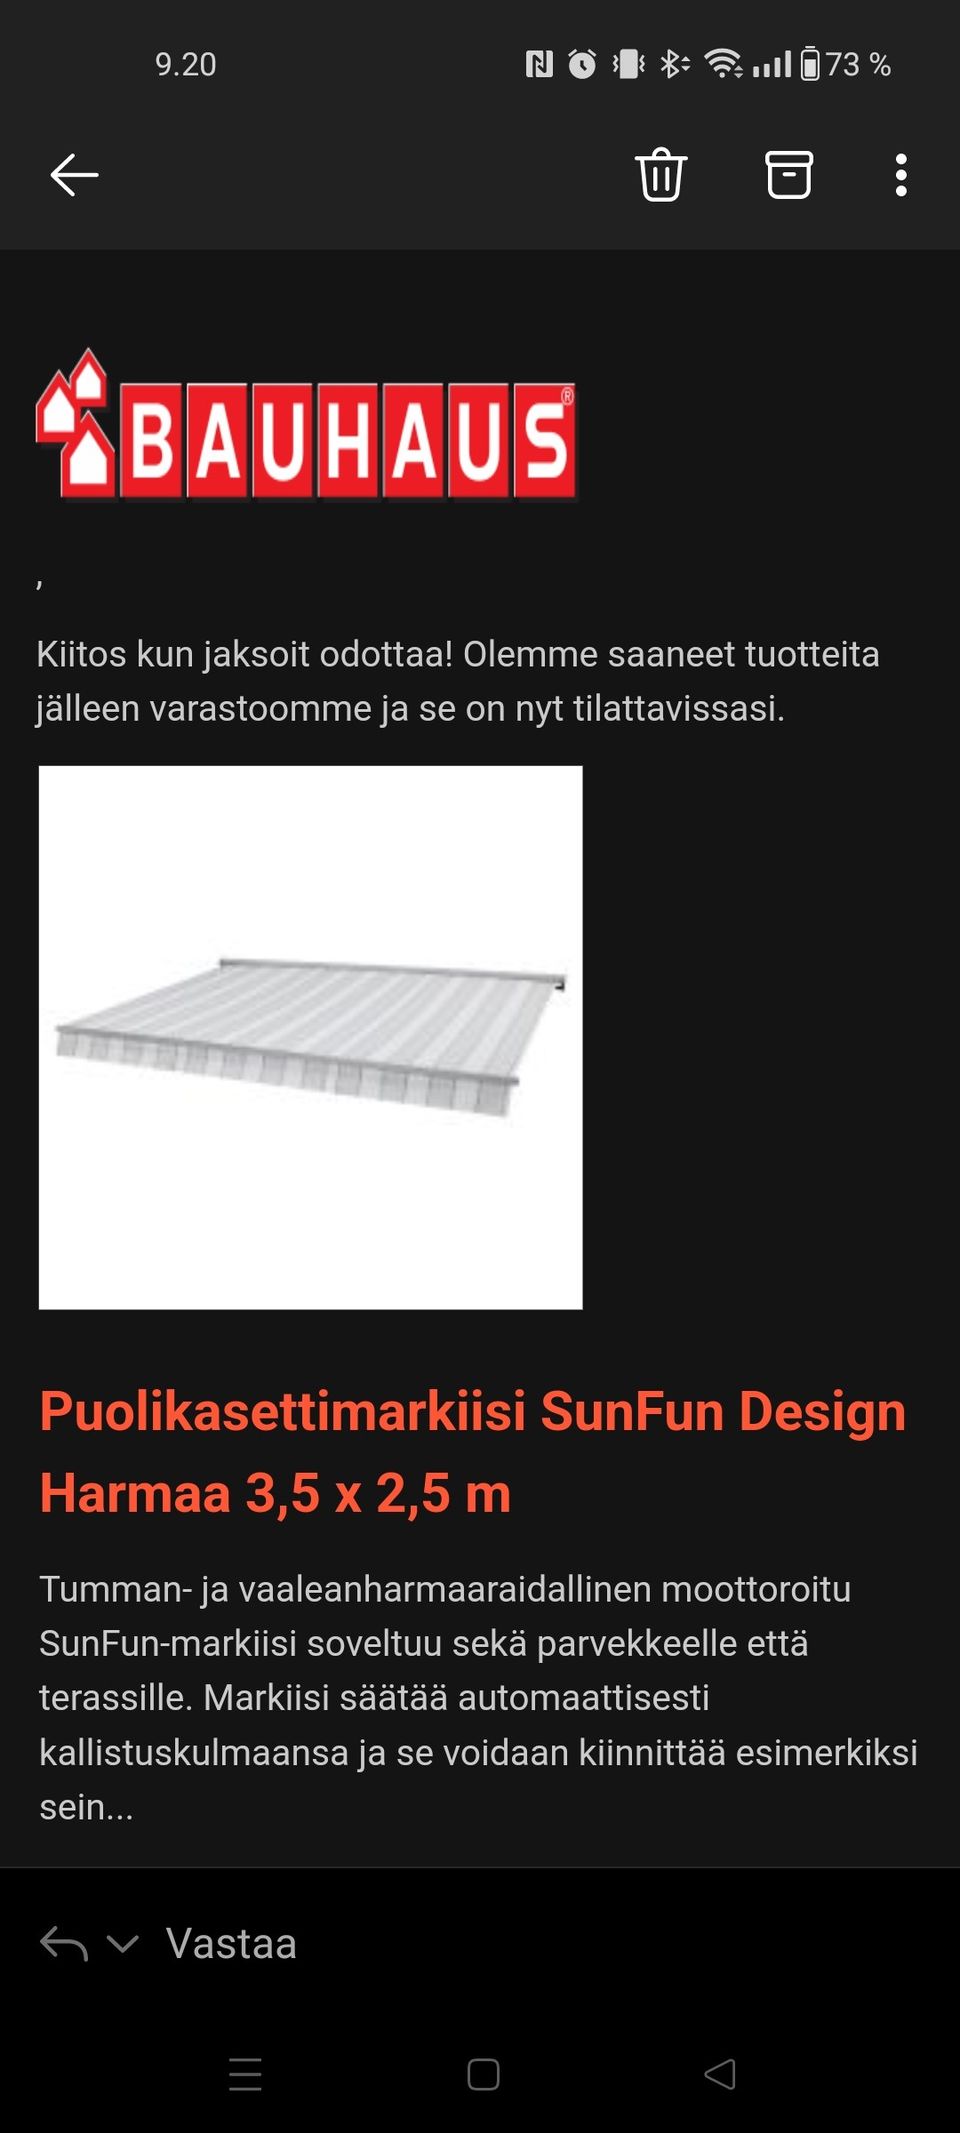 Markiisi, puolikasettimarkiisi SunFun design 3,5 x 2,5m, harmaa